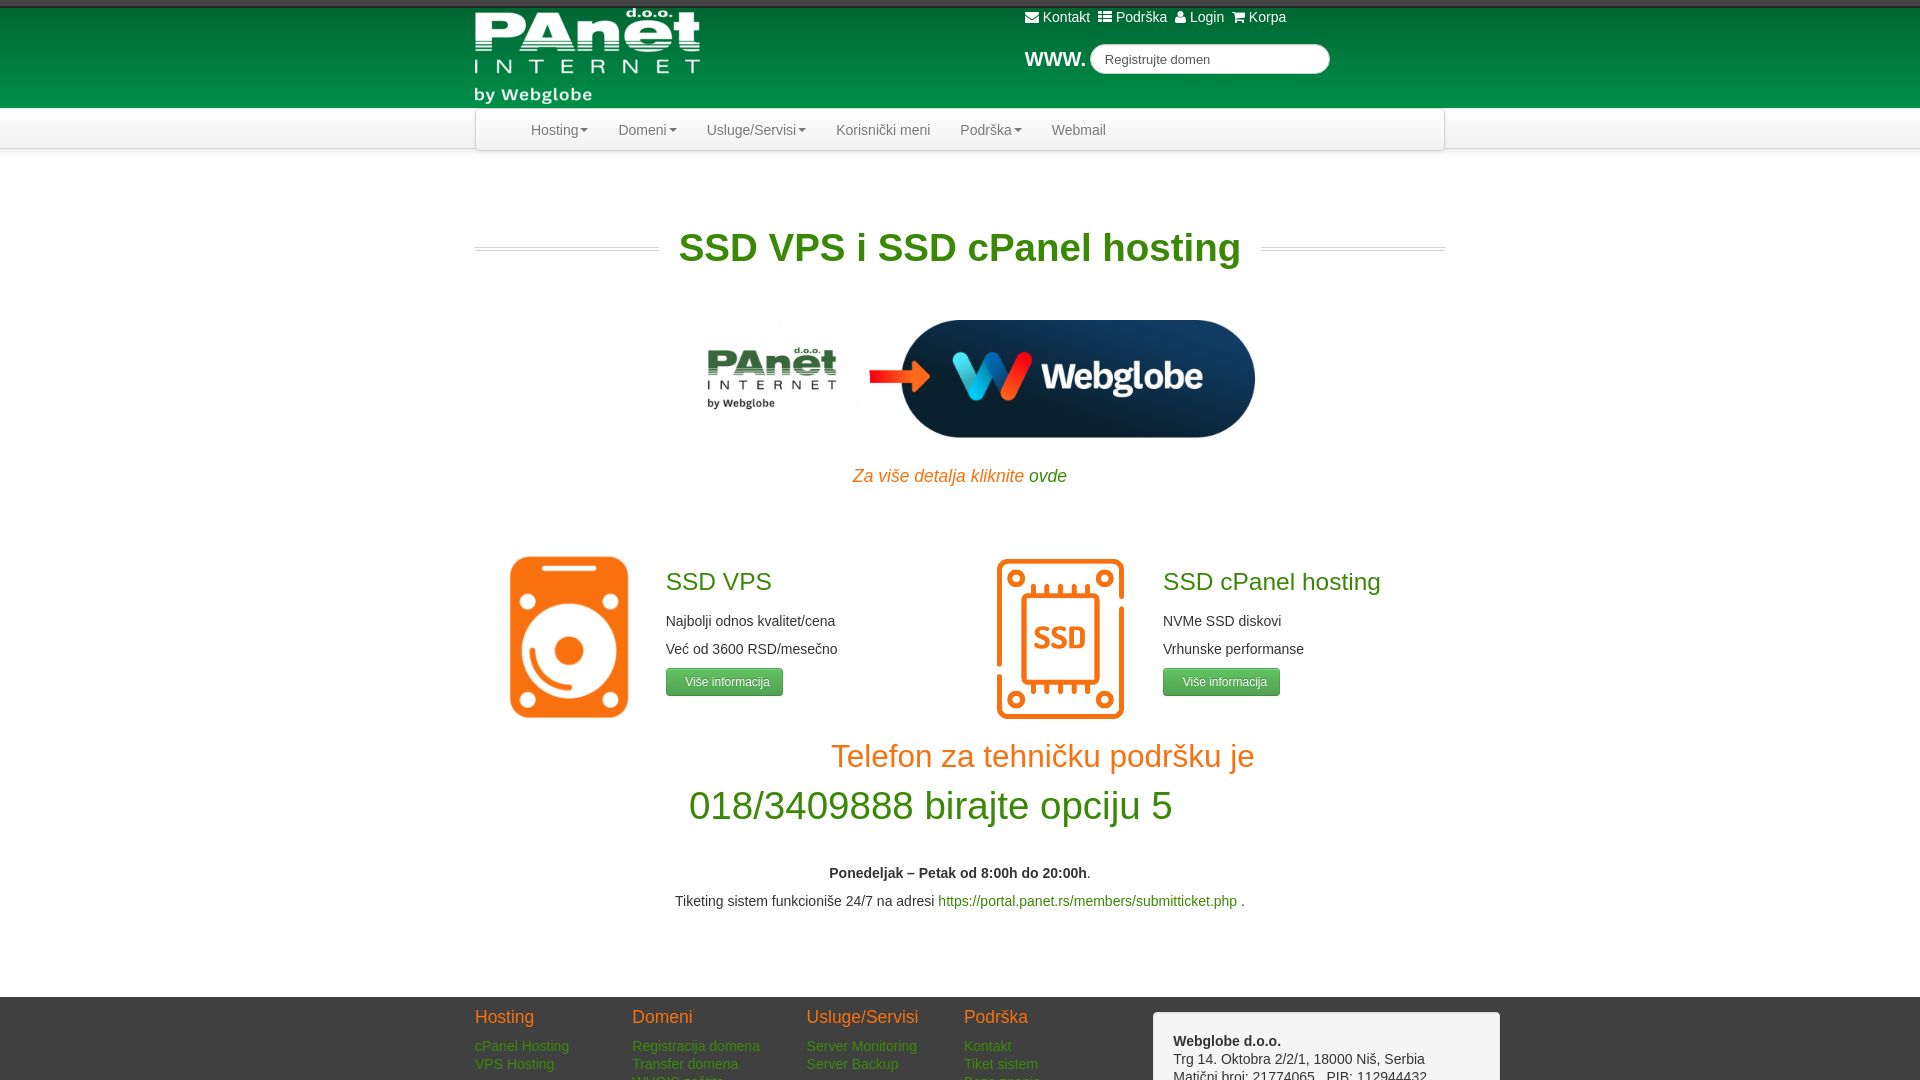 Status do site panet.rs está   ONLINE